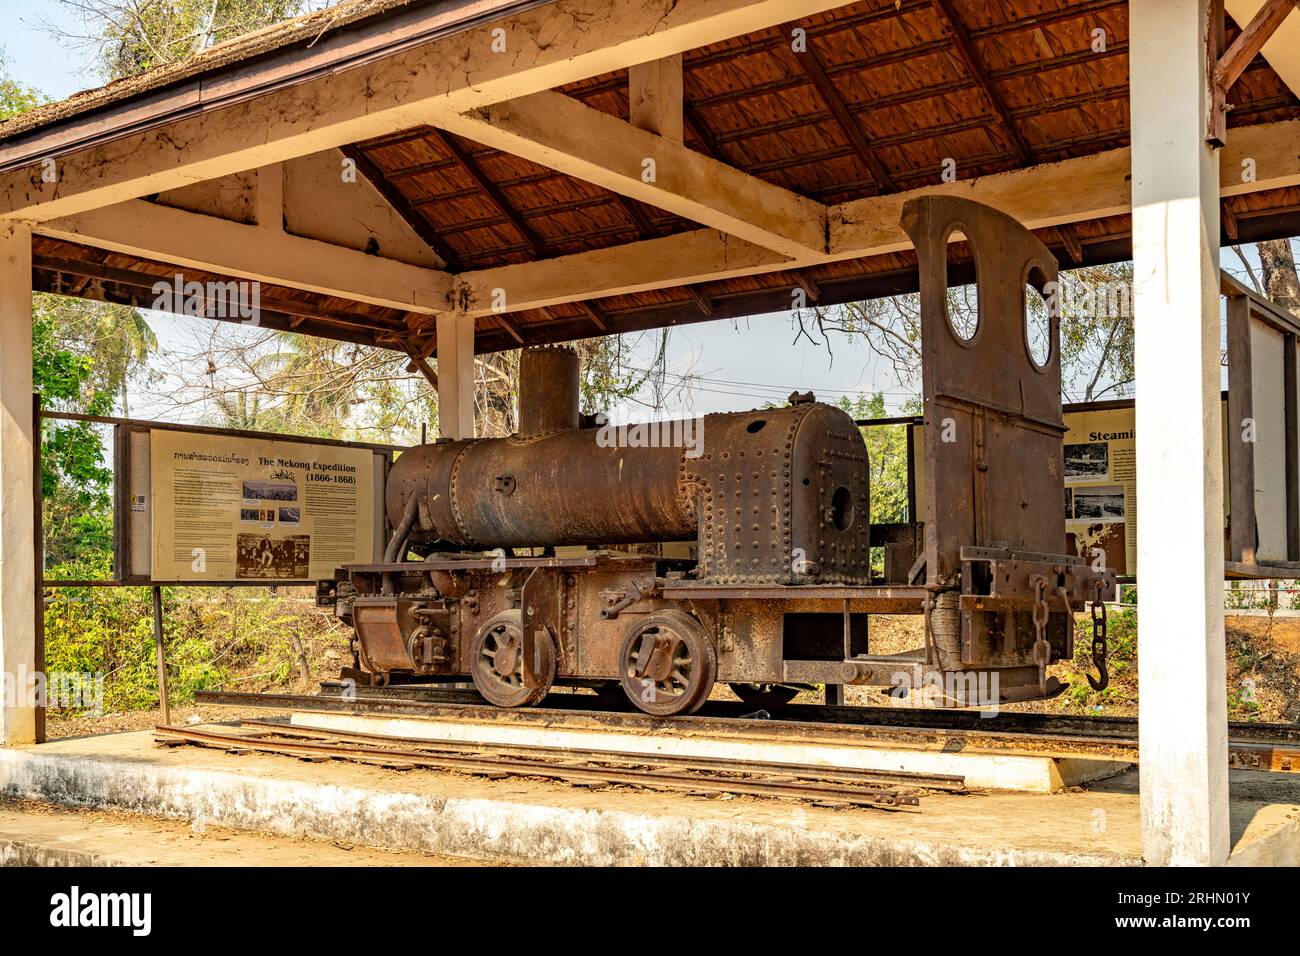 Historische Dampflokomotive Eloïse der alten Schmalspurbahn auf den Inseln Don Det und Don Khon, si Phan Don, Provinz Champasak, Laos, Asien | Histo Banque D'Images